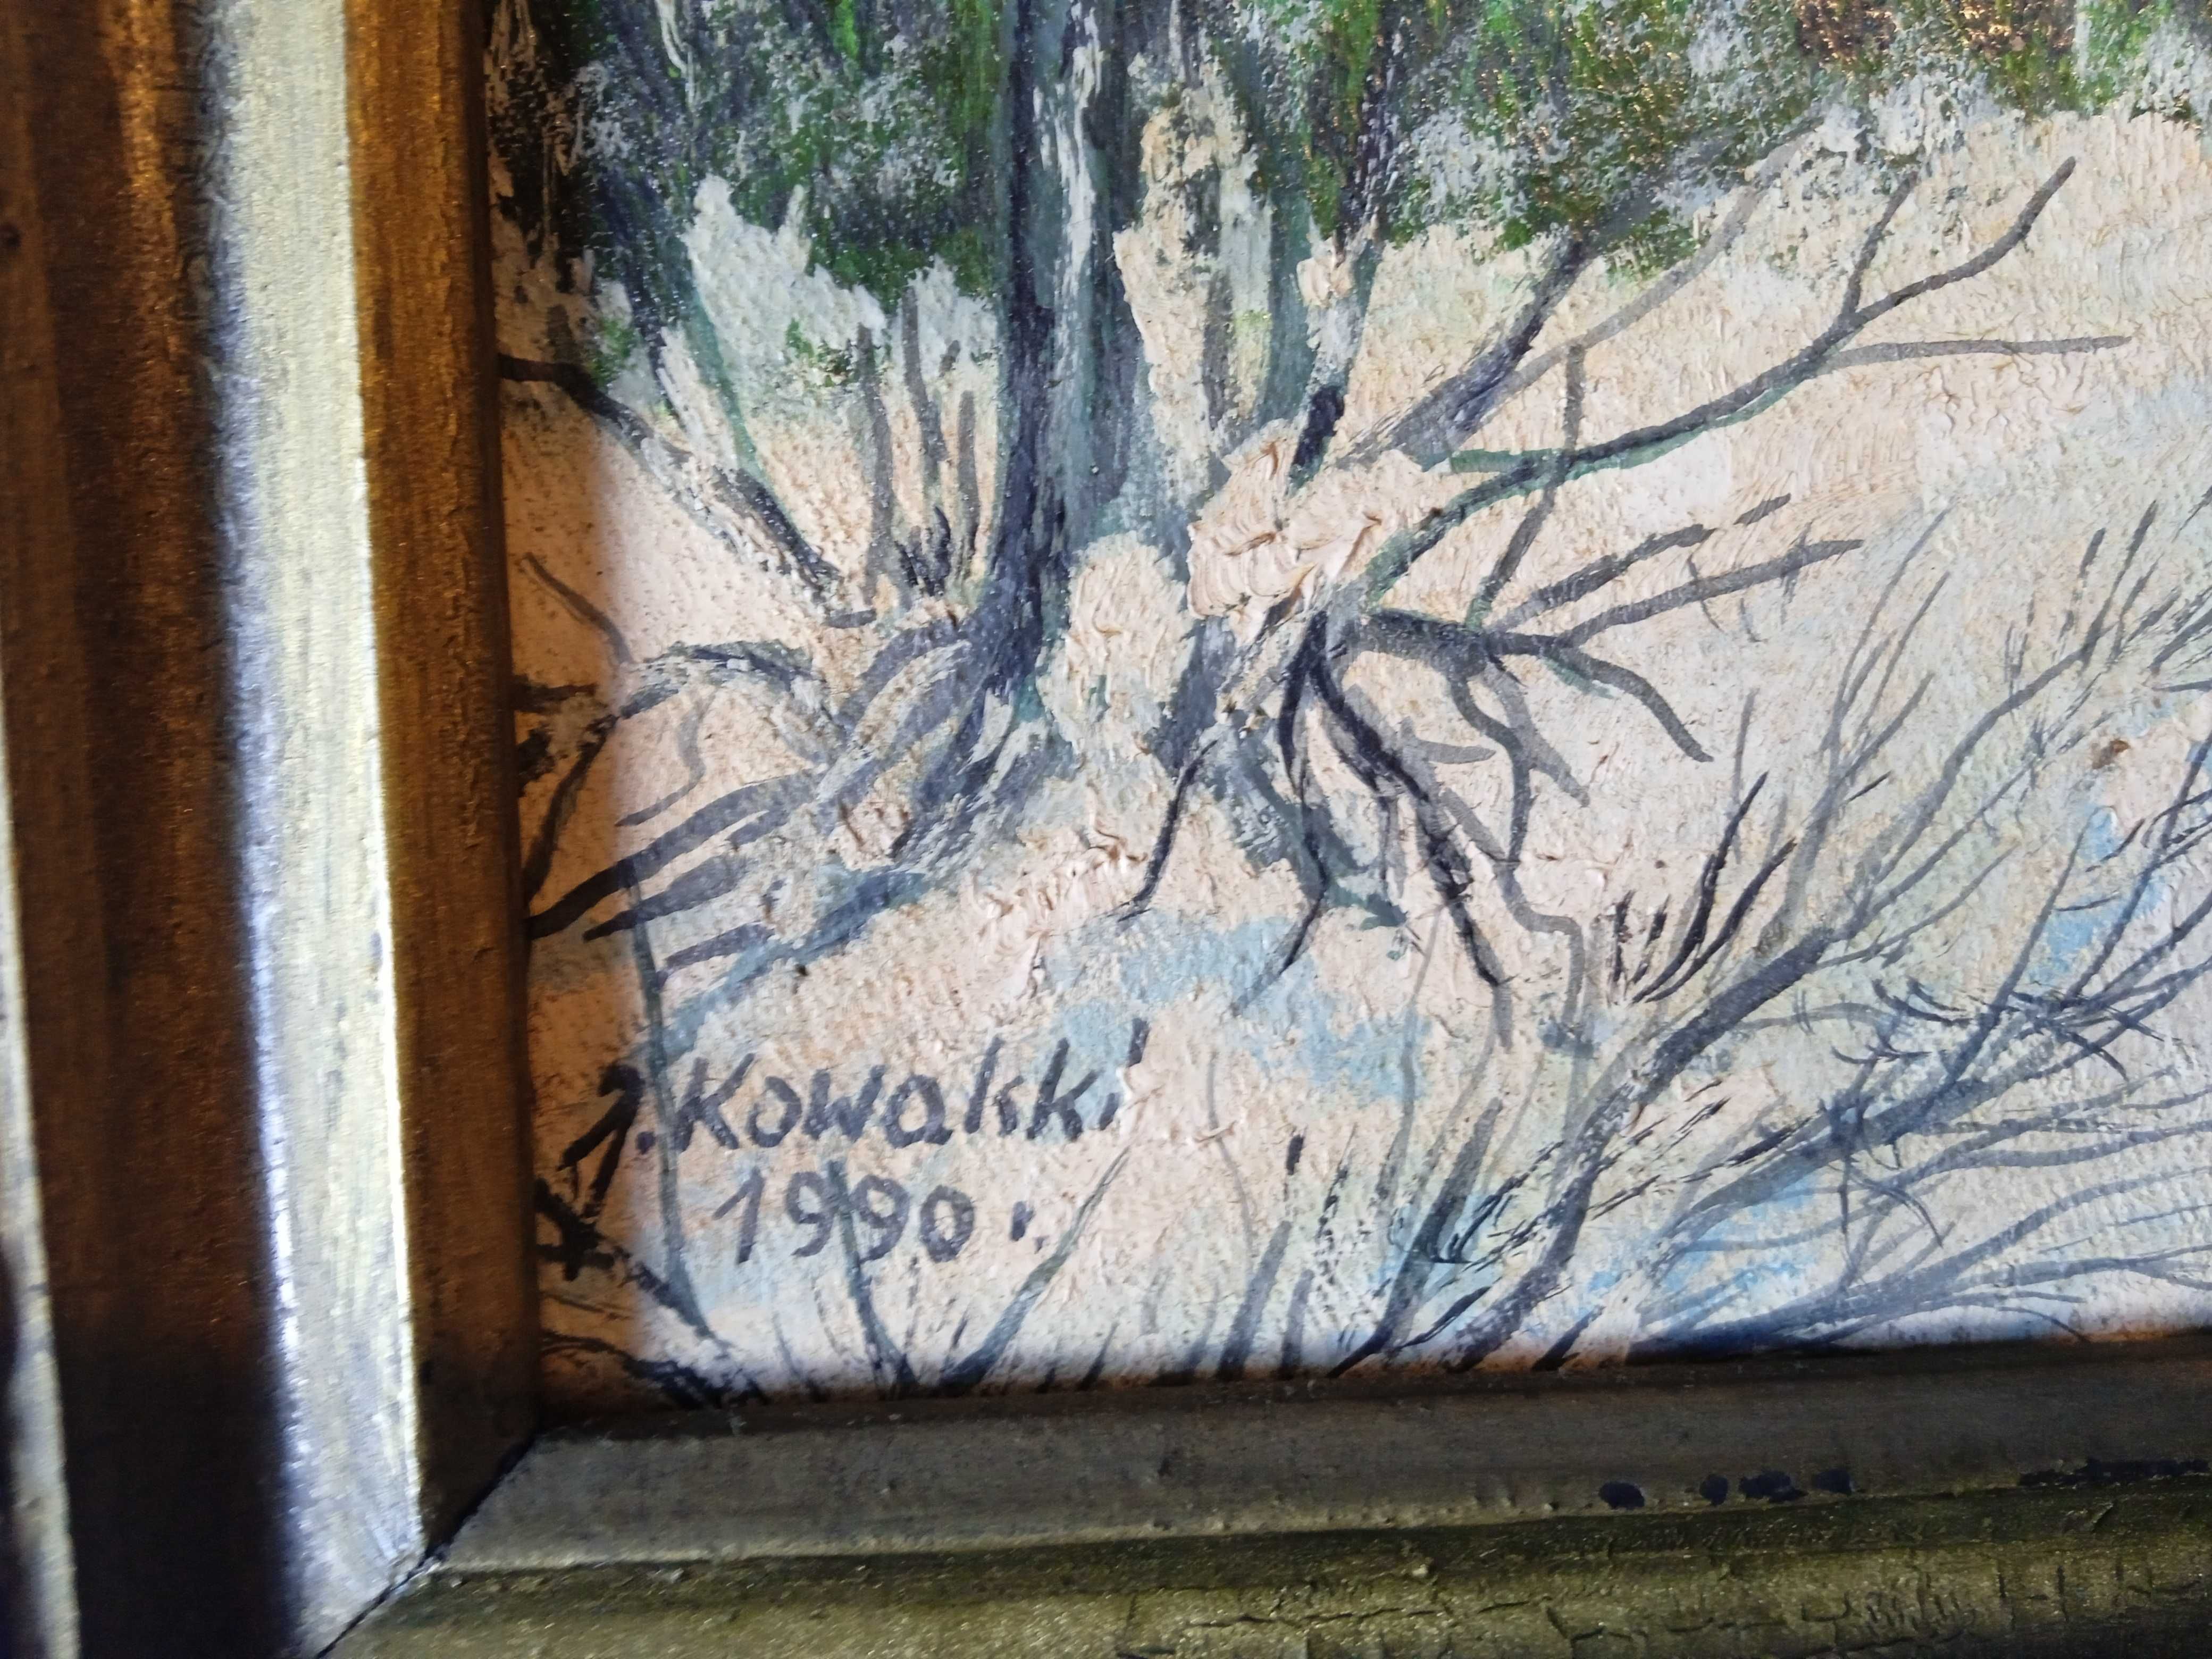 Pejzaż olejny w zdobionej ramce. J. Kowalski, 1990